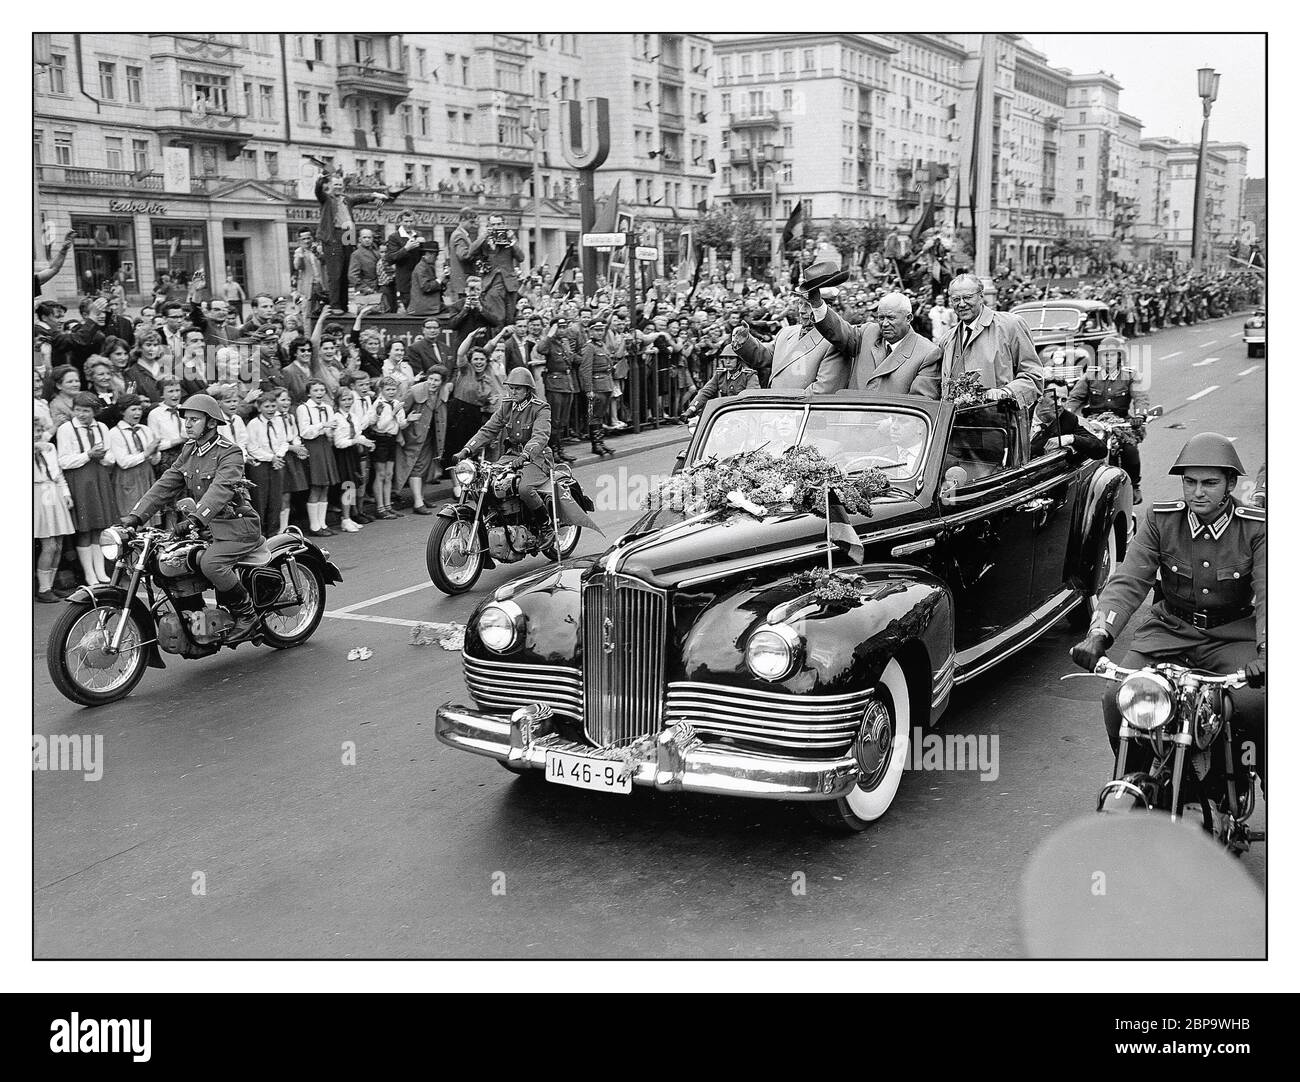 1960 Sowjetischer Premierminister Nikita Chruschtschow in einem konvertiblen russischen ZIL-111B in der Stalin Allee Ost-Berlin Deutschland. Der Zil-111 war eine Limousine, die 1958–1967 vom sowjetischen Automobilhersteller Zil hergestellt wurde. Es war die erste Nachkriegs-Limousine in der Sowjetunion entworfen. Am 21. Mai 1960 hielt Nikita Chruschtschow, erster Sekretär der Kommunistischen Partei der Sowjetunion, in der Sportarena in Ost-Berlin unter einem Banner eine Rede, in der er zum Ende der Provokationen der Vereinigten Staaten und der Bundesrepublik Deutschland (BRD) aufrief. Sowie für die allgemeine Abrüstung. Stockfoto